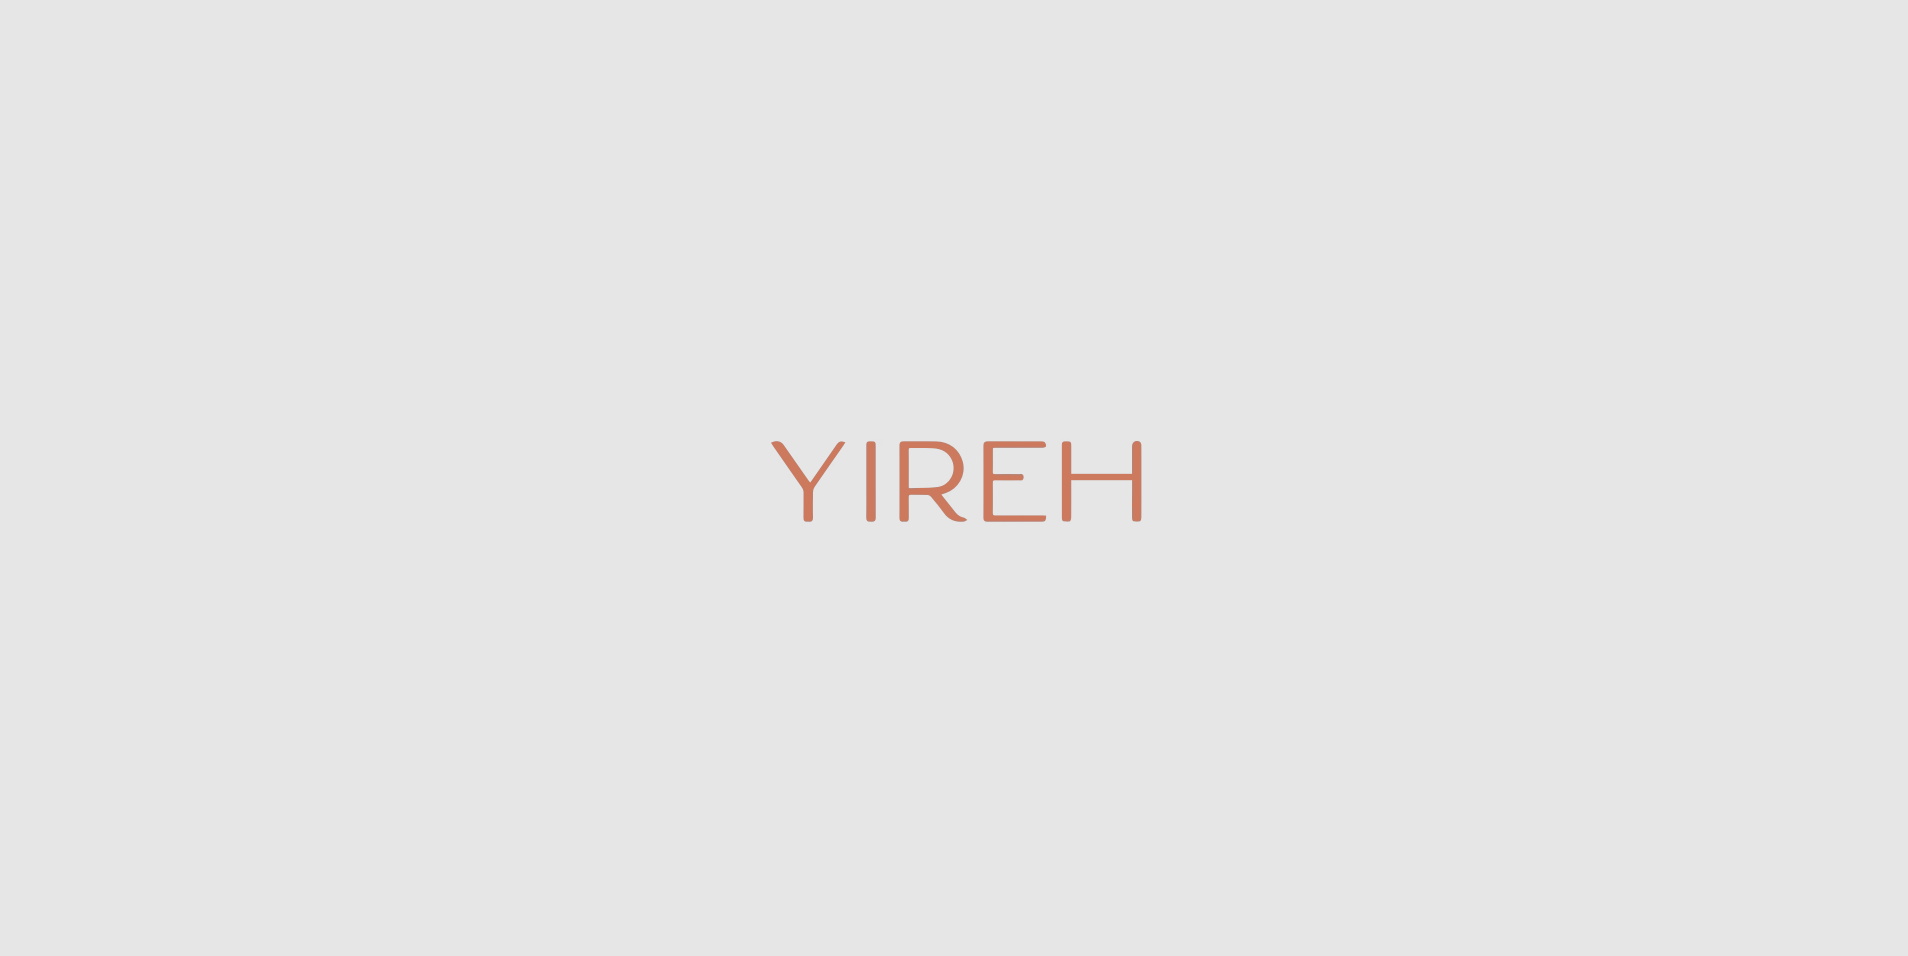 Yireh